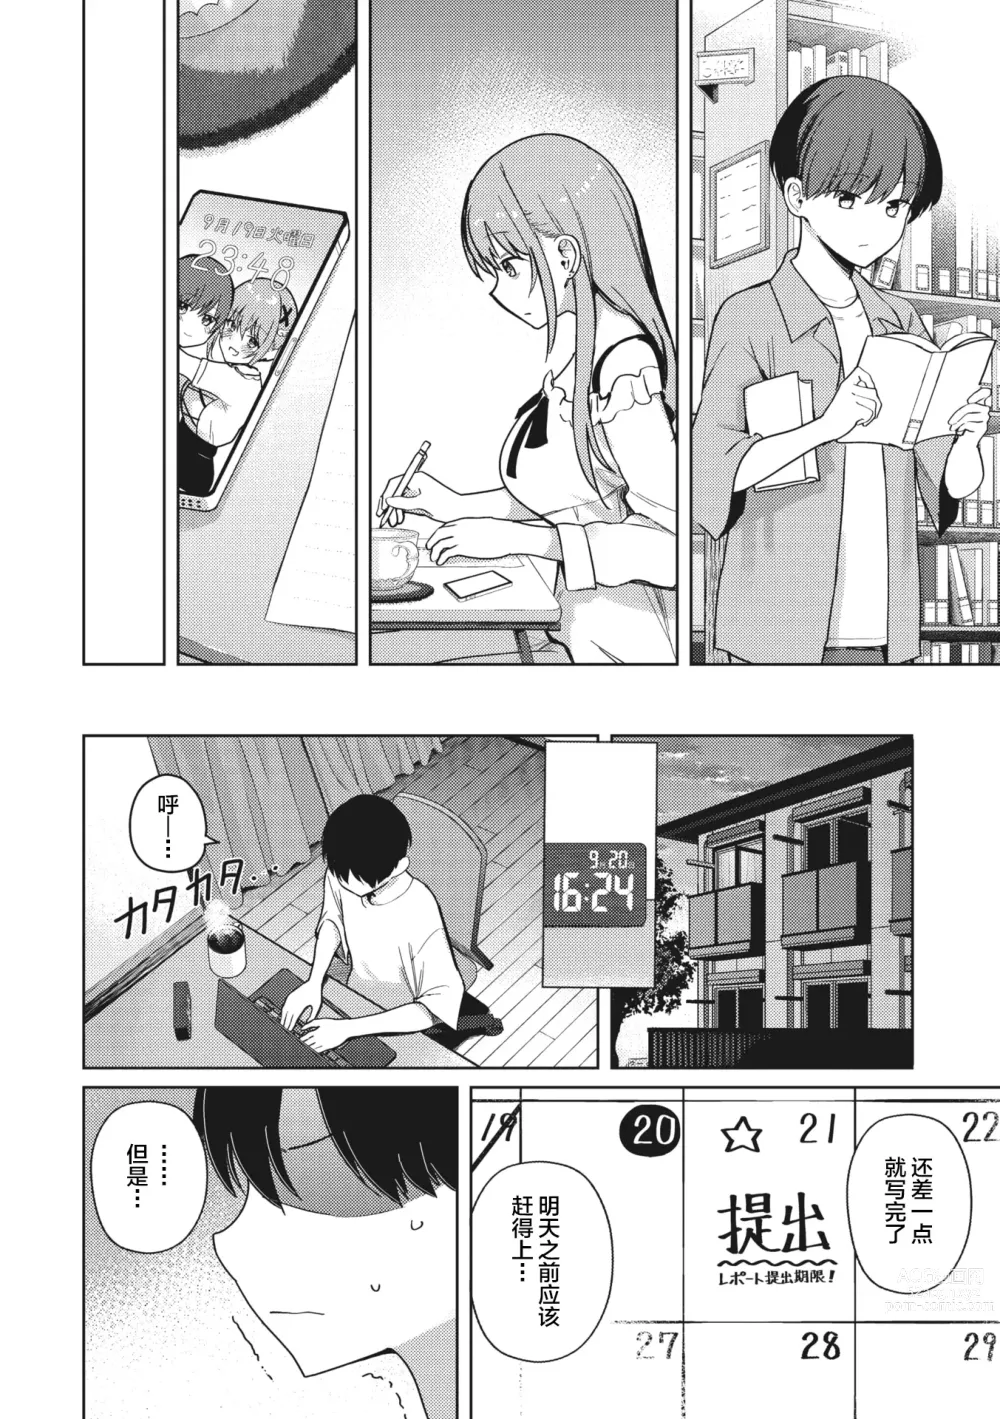 Page 6 of manga Motto! Best Match Mine Girl